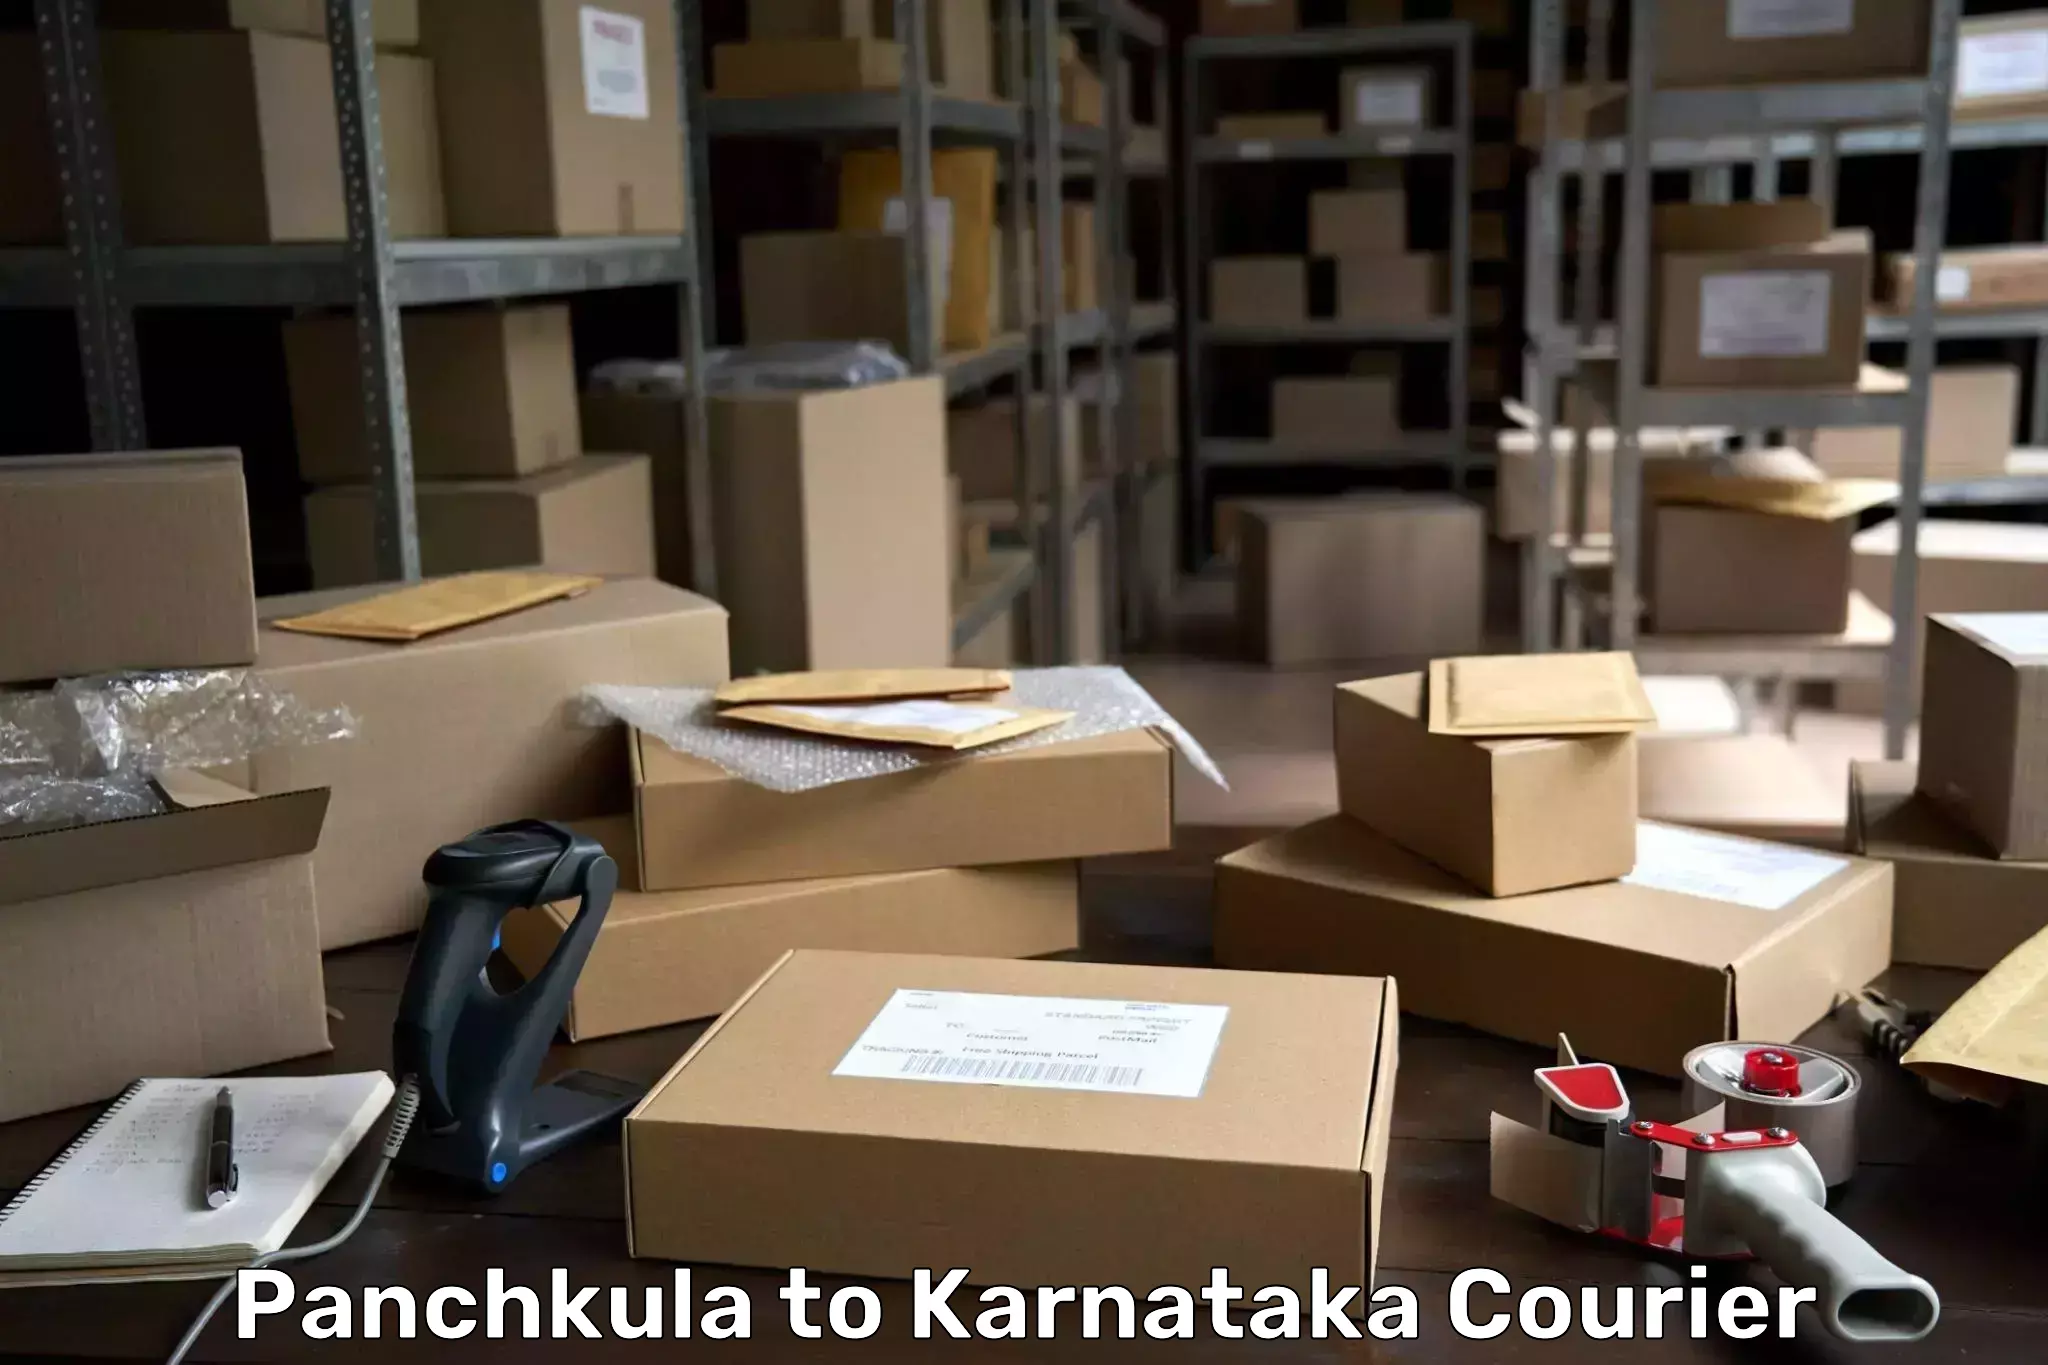 On-call courier service Panchkula to Yenepoya Mangalore